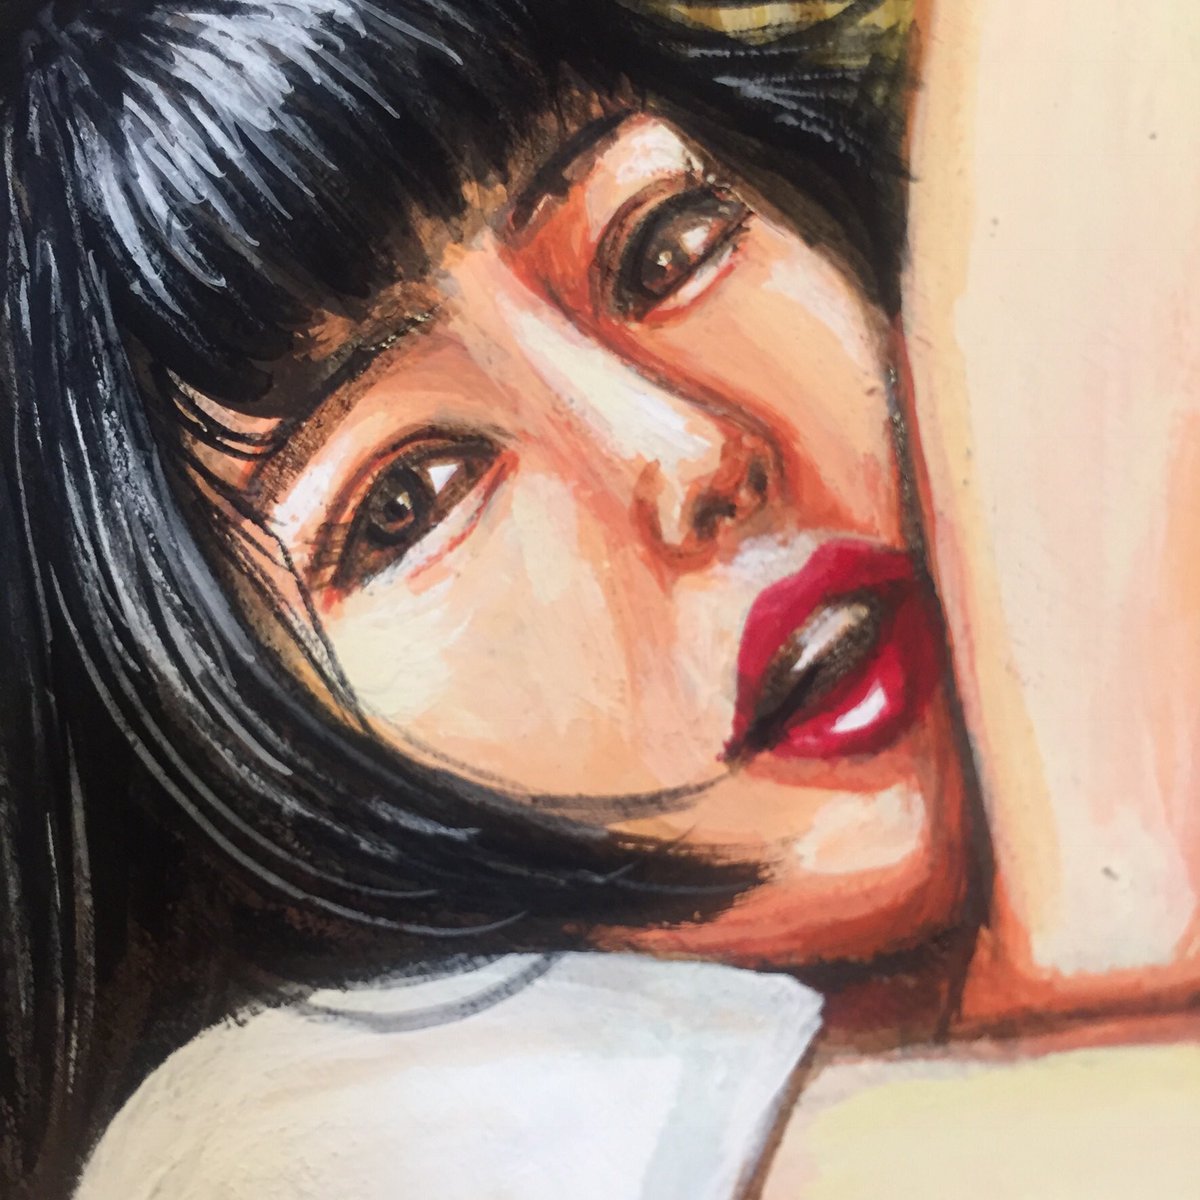 「こんなにエロい表情の女子を描けるのに、なぜ私は…以下略。 」|吉岡里奈のイラスト